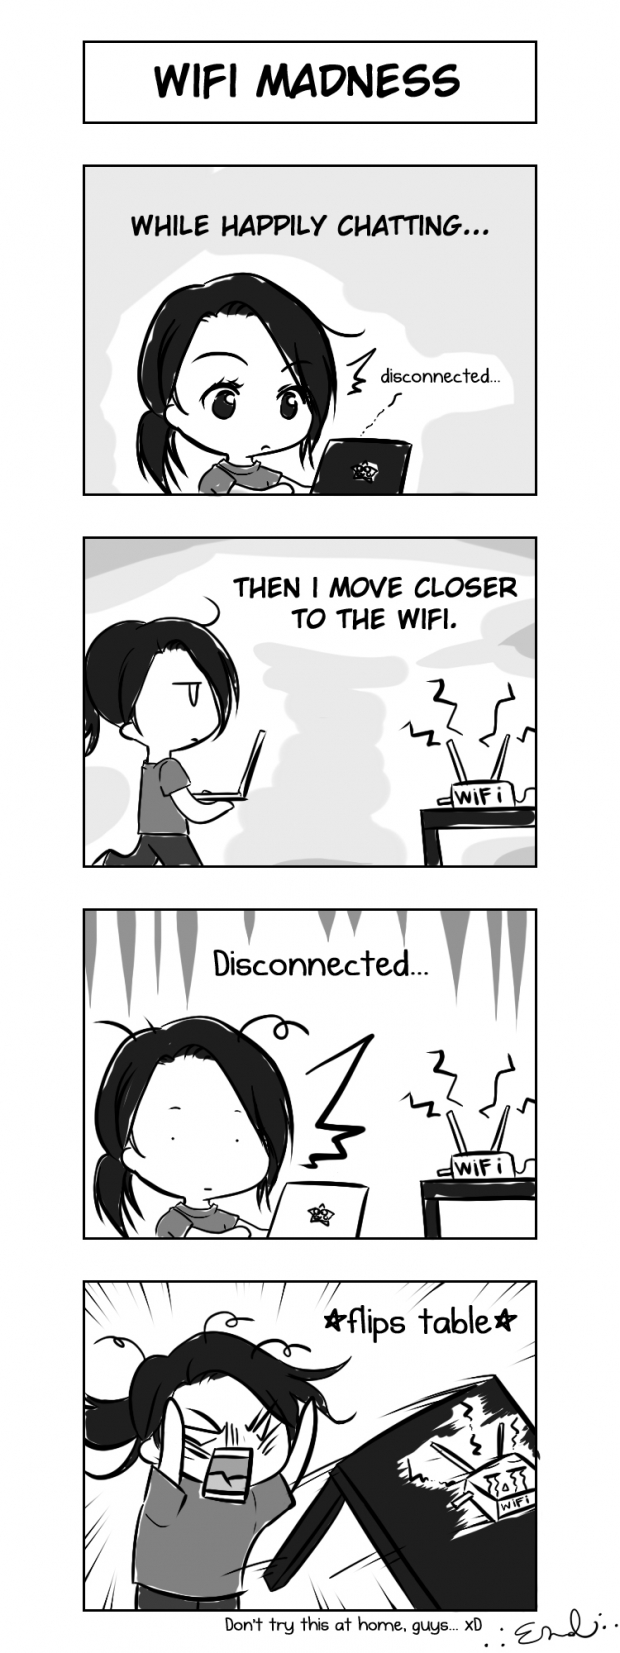 Wifi Madness